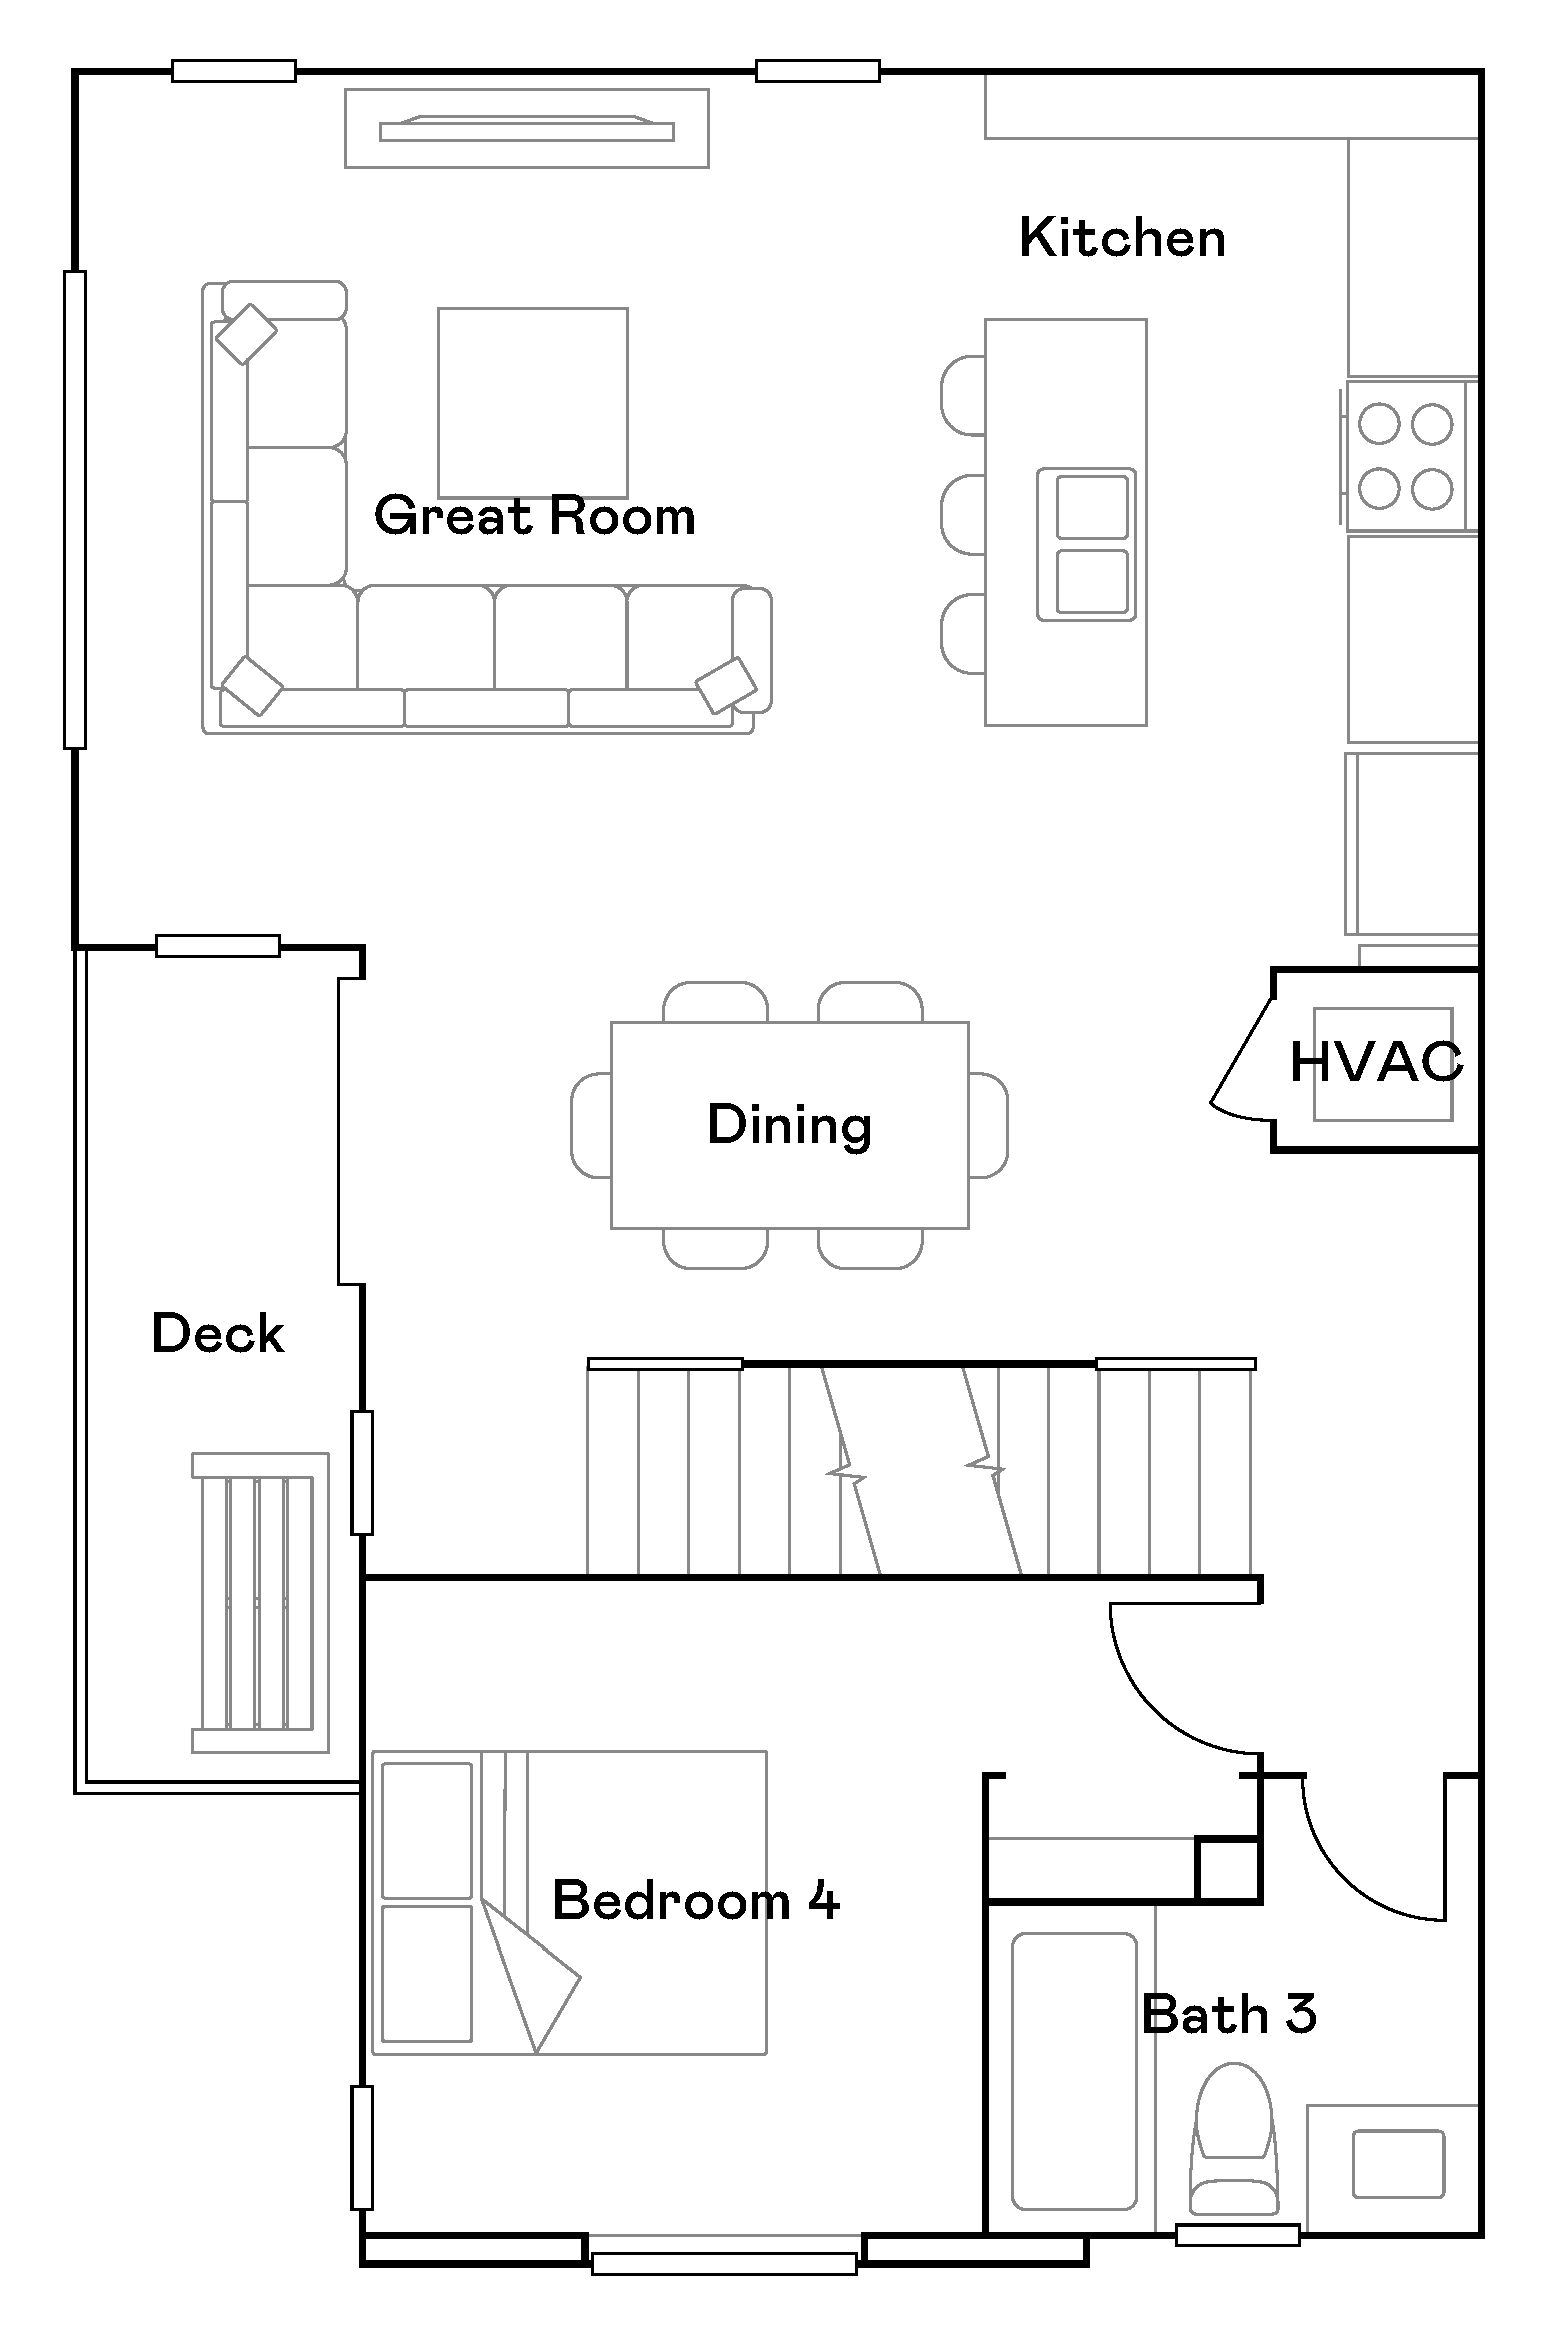 Willow Epoca plan 10 second floor